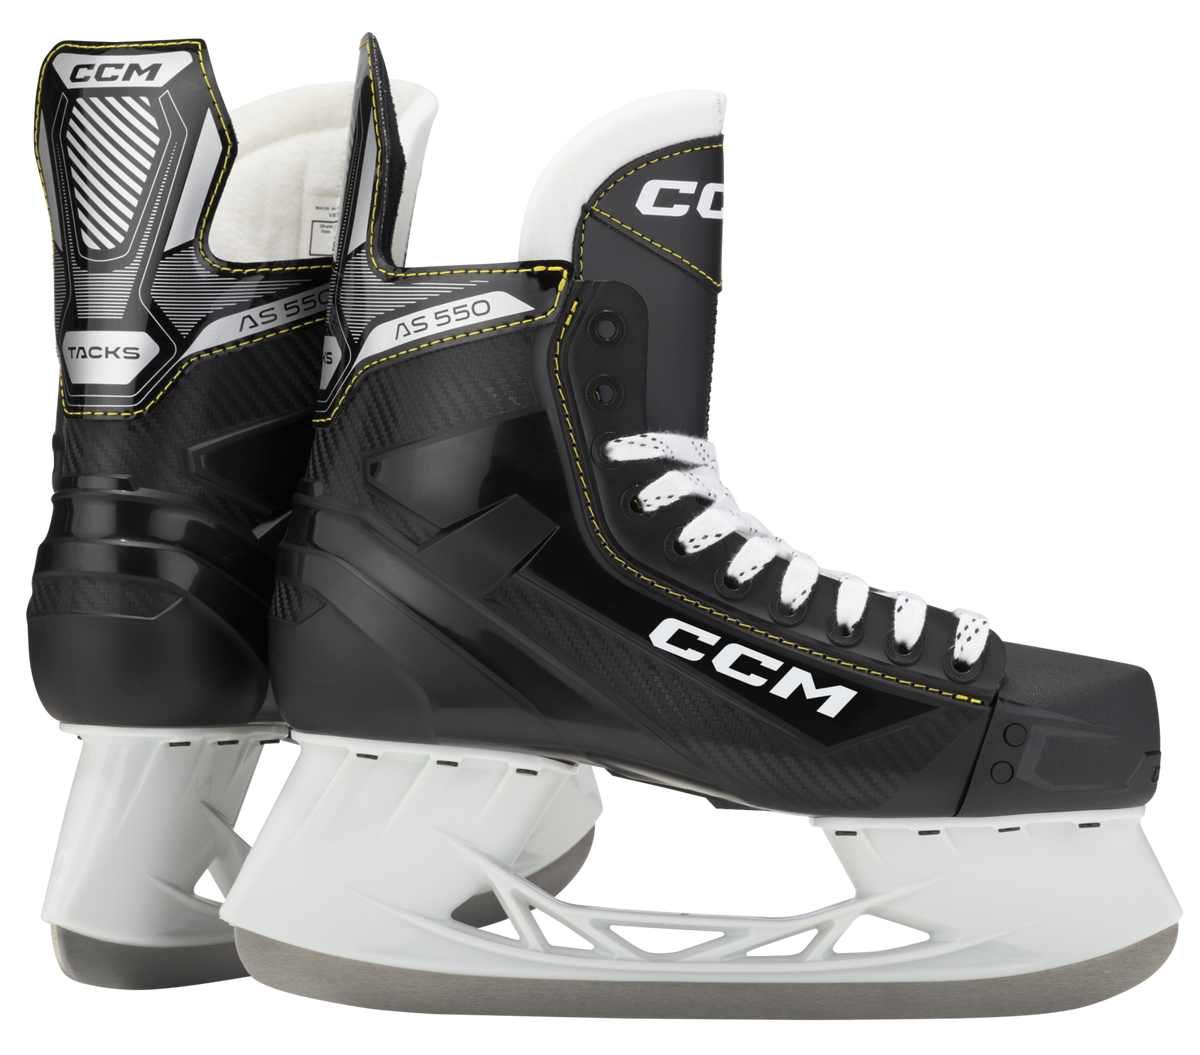 CCM Tacks AS-550 Intermediate Hockey Skates